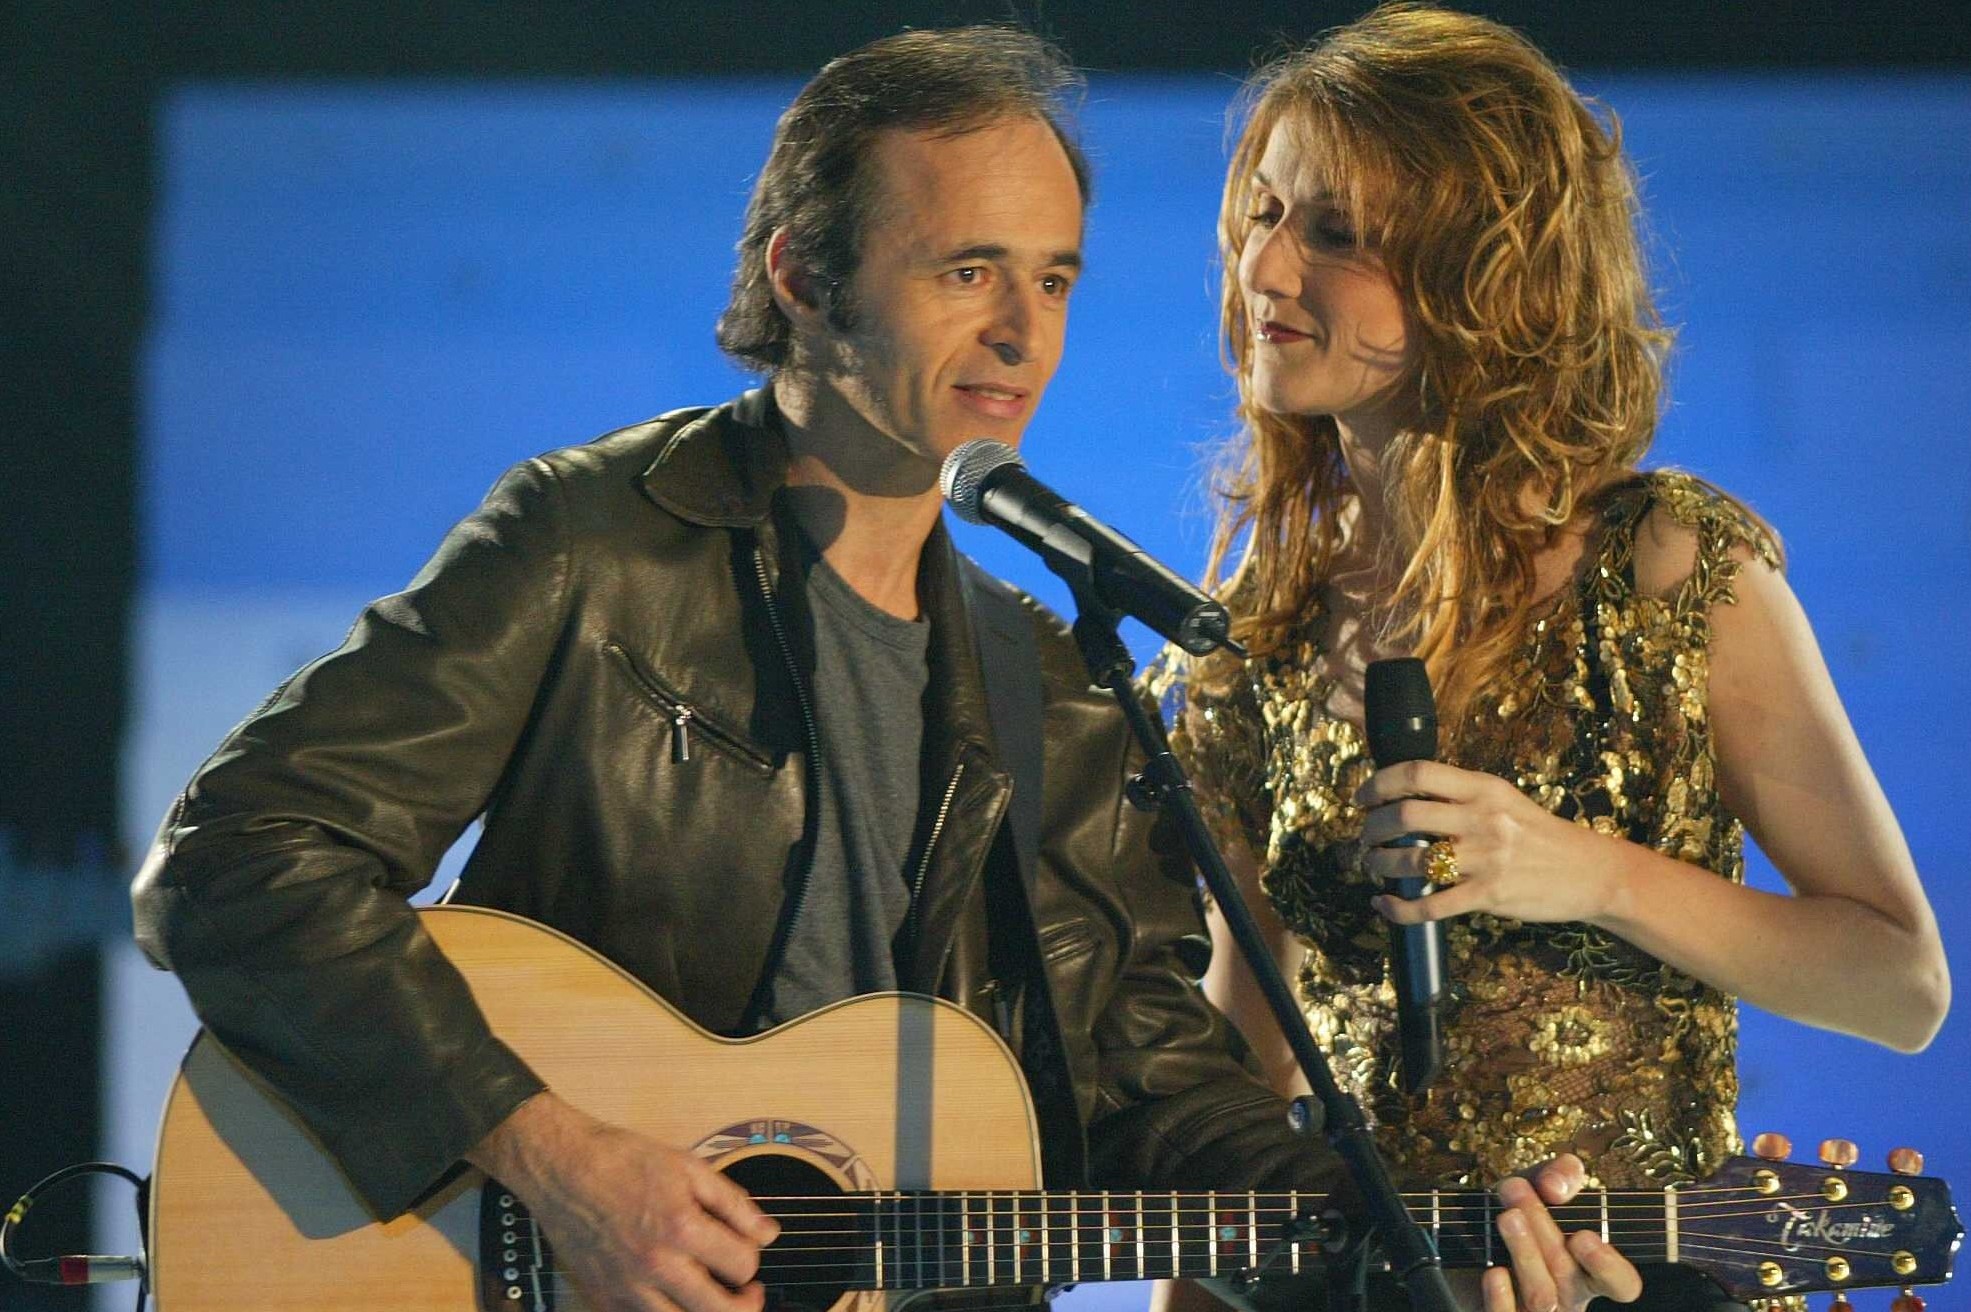 Celine Dion with Jean-Jacques Goldman